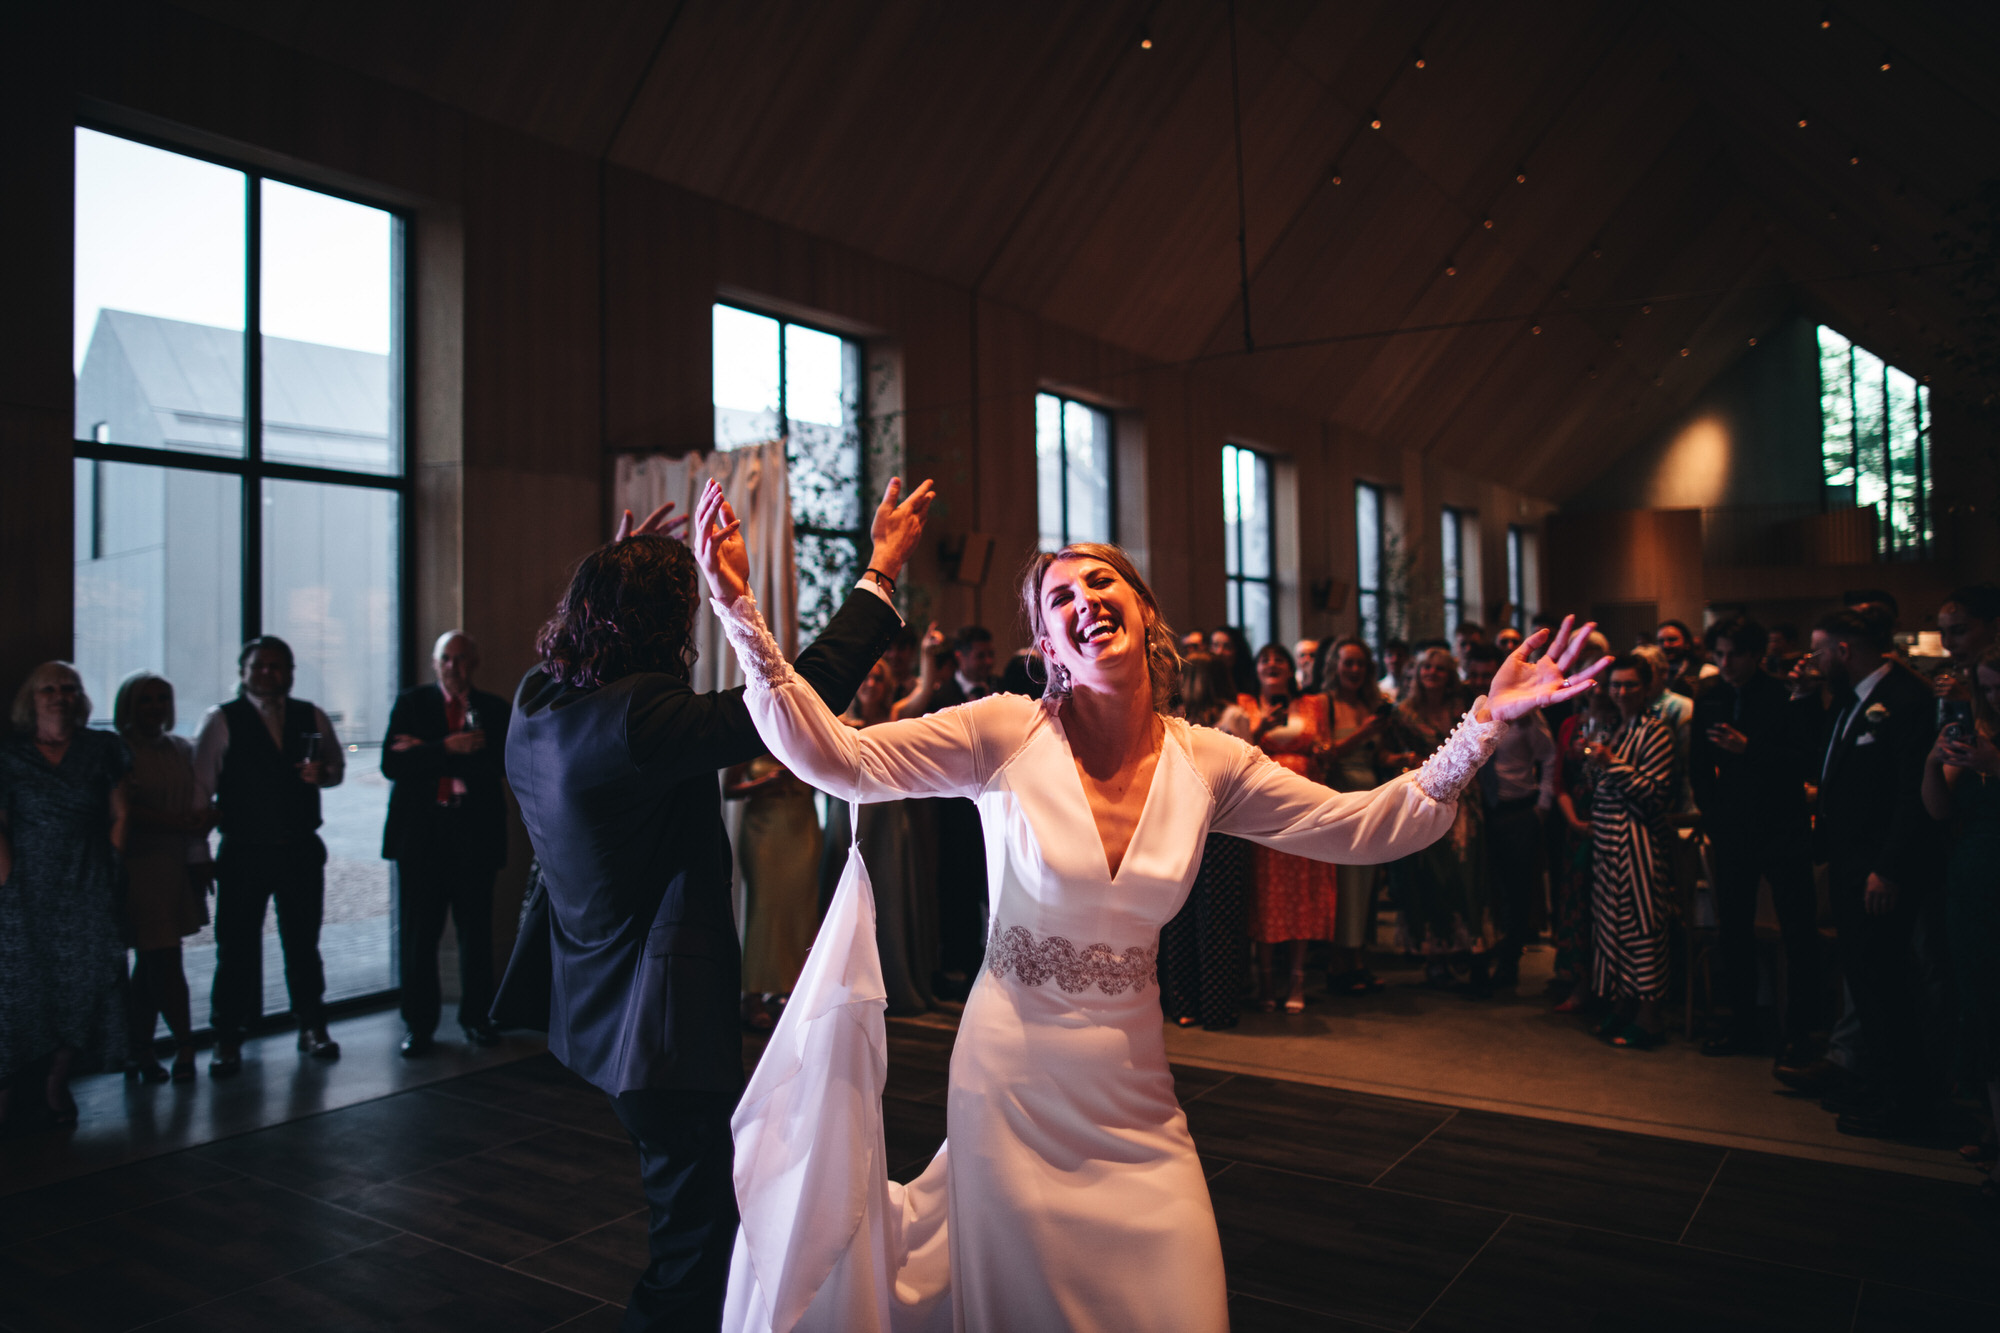 couple raise their arms on dancefloor